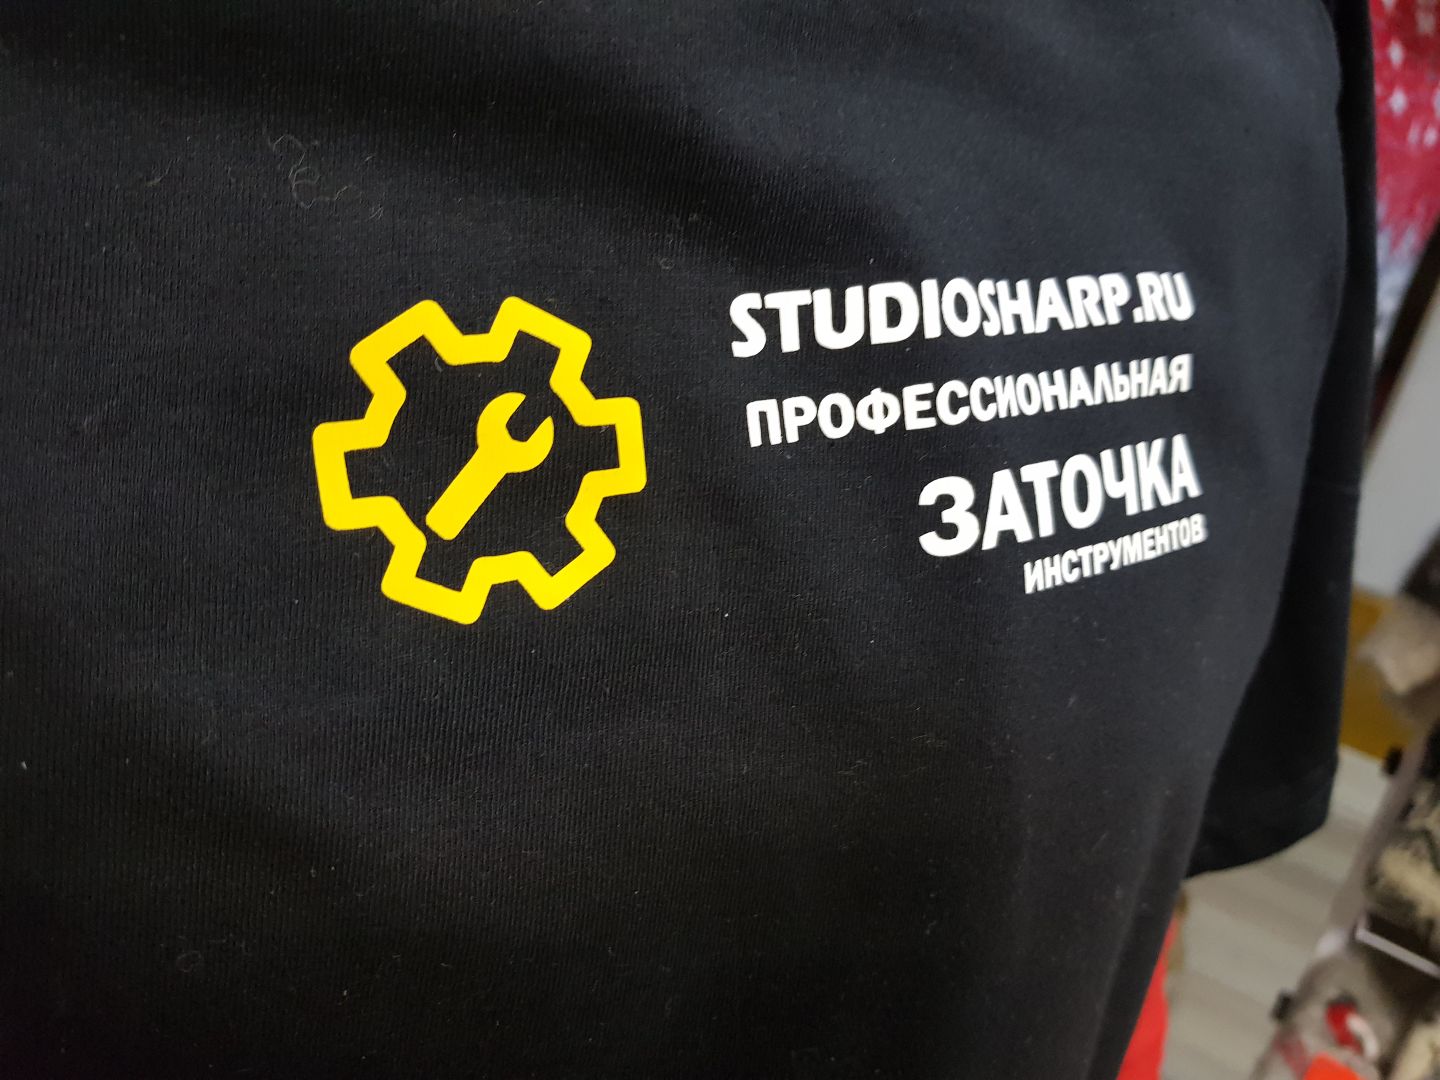 Печать логотипа на футболке выполнена пленкой. Цена 350 р.